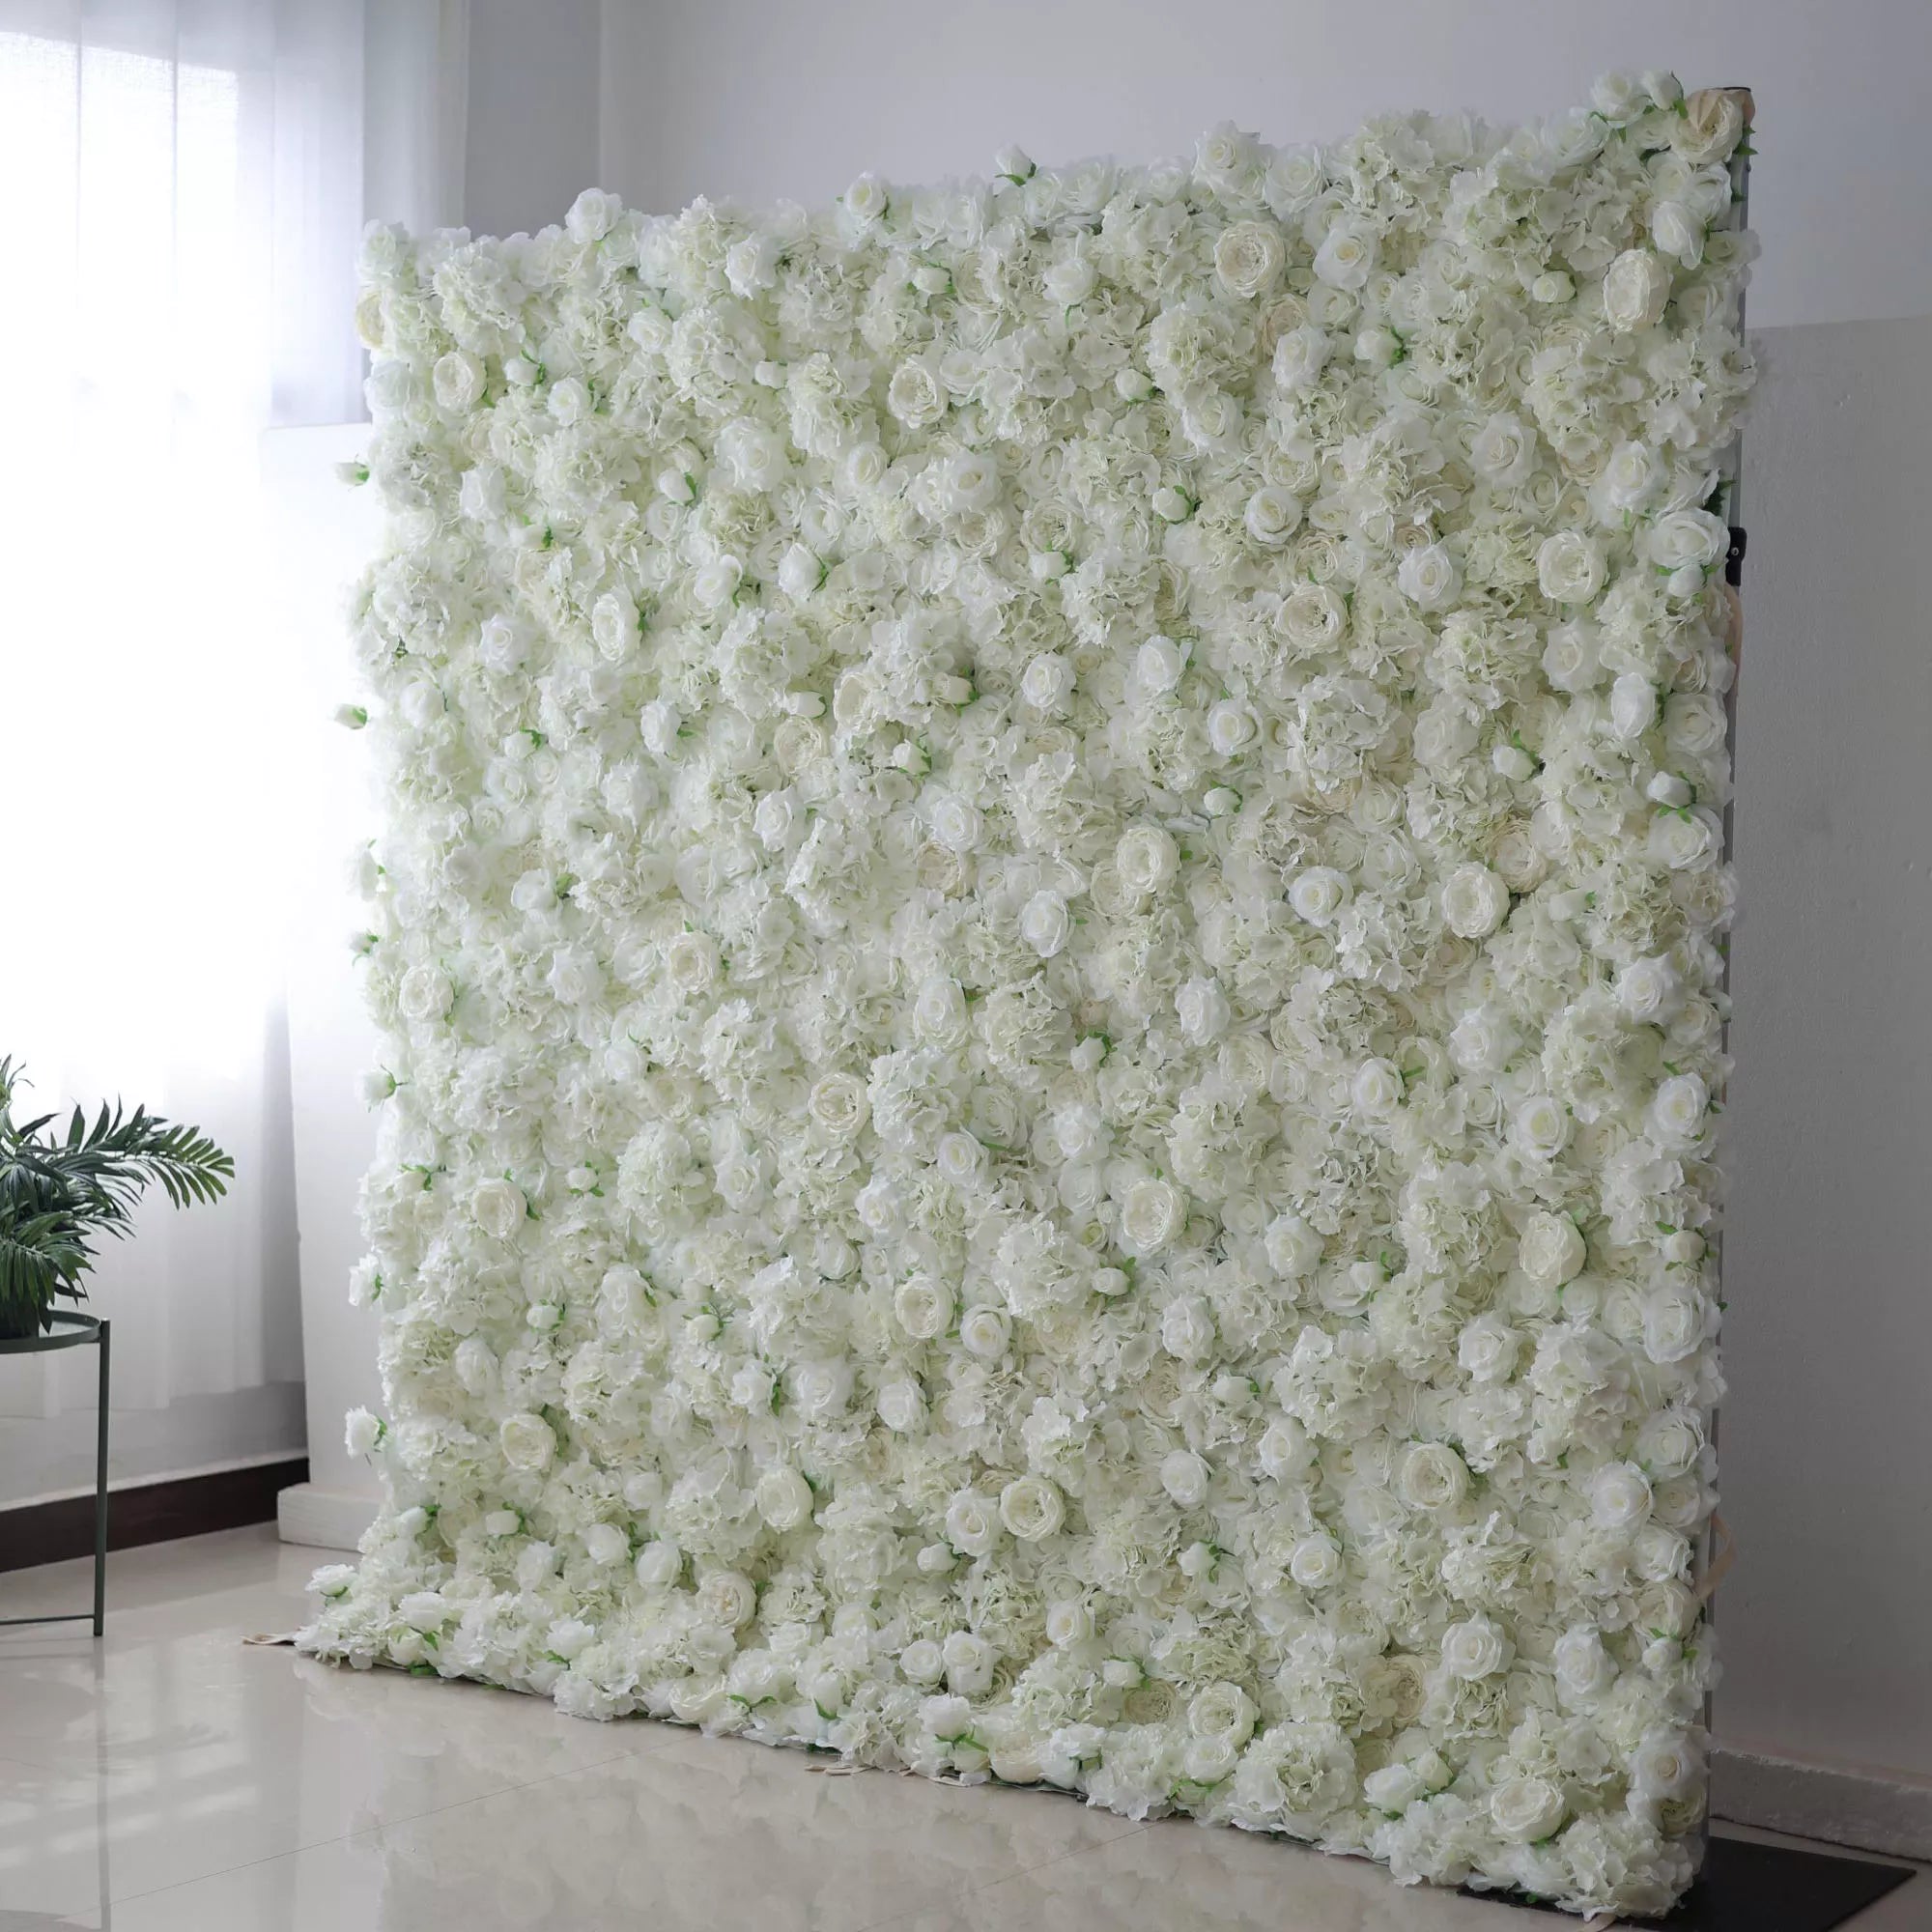 فالار فيلز: أناقة بيضاء أثرية-جدار من نسيج صناعي مهيب يقطر بزهرة بيضاء نقية